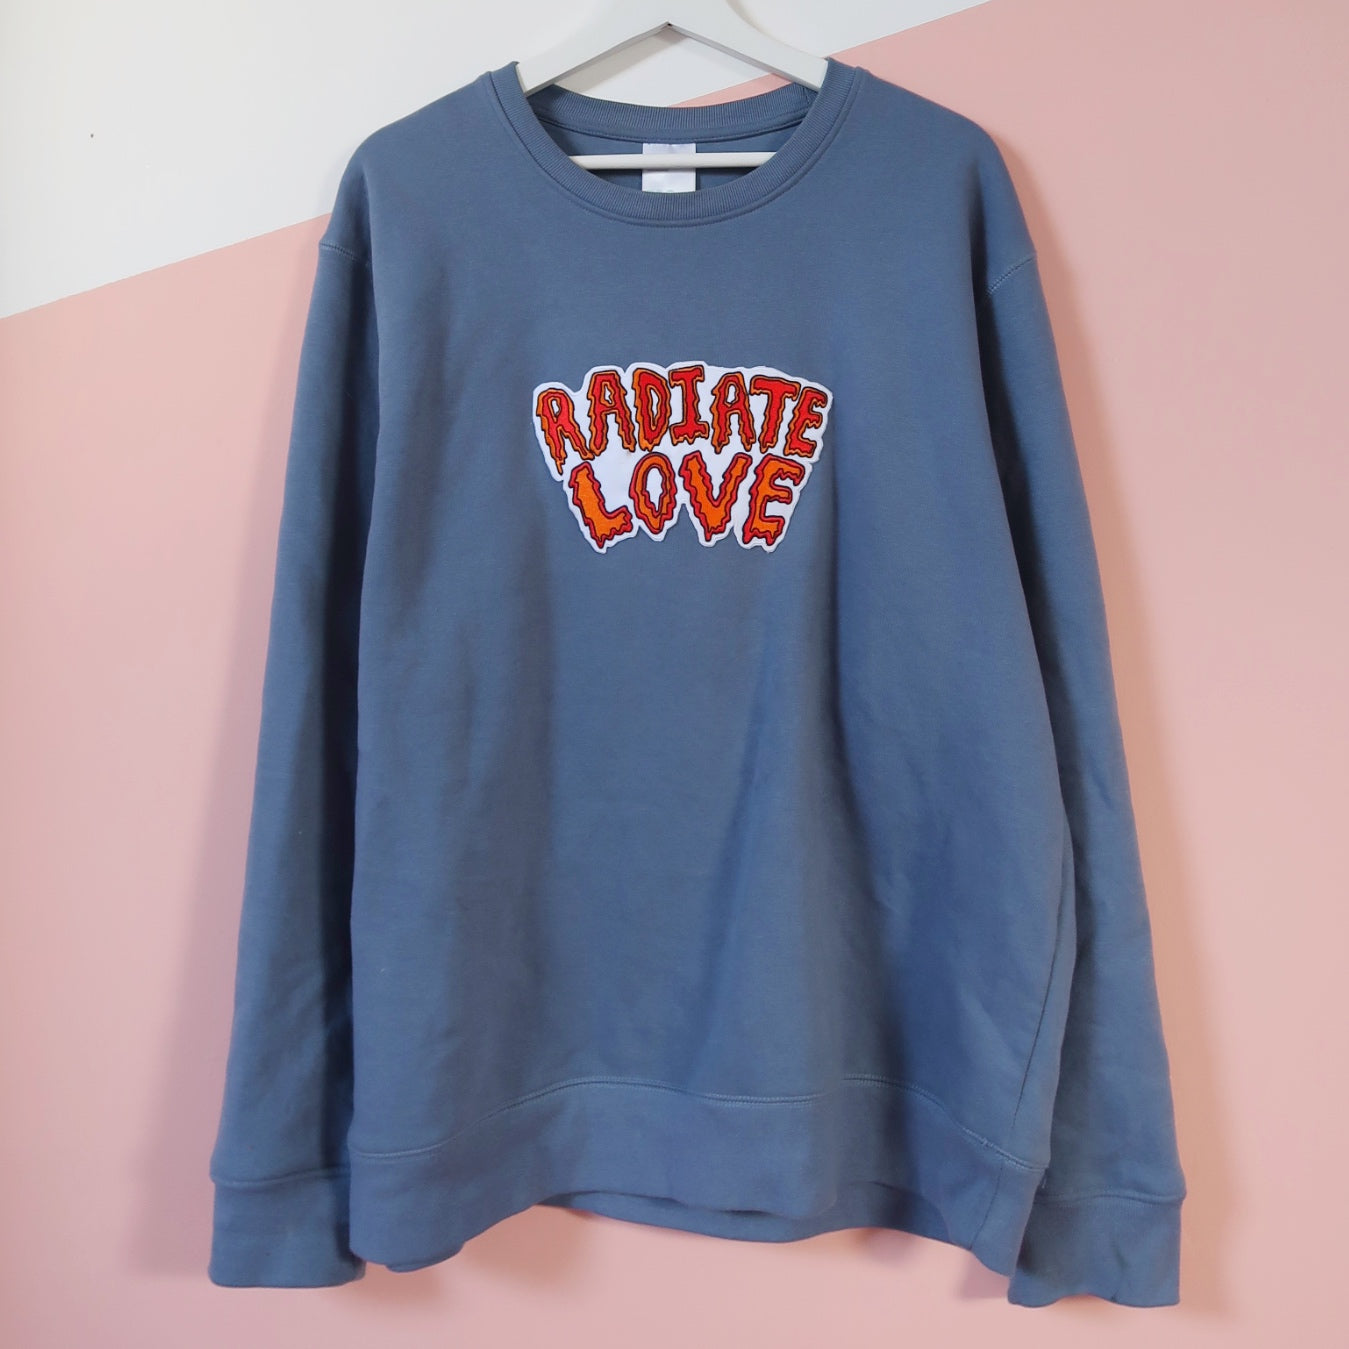 radiate love embroidered sweatshirt - dusky blue